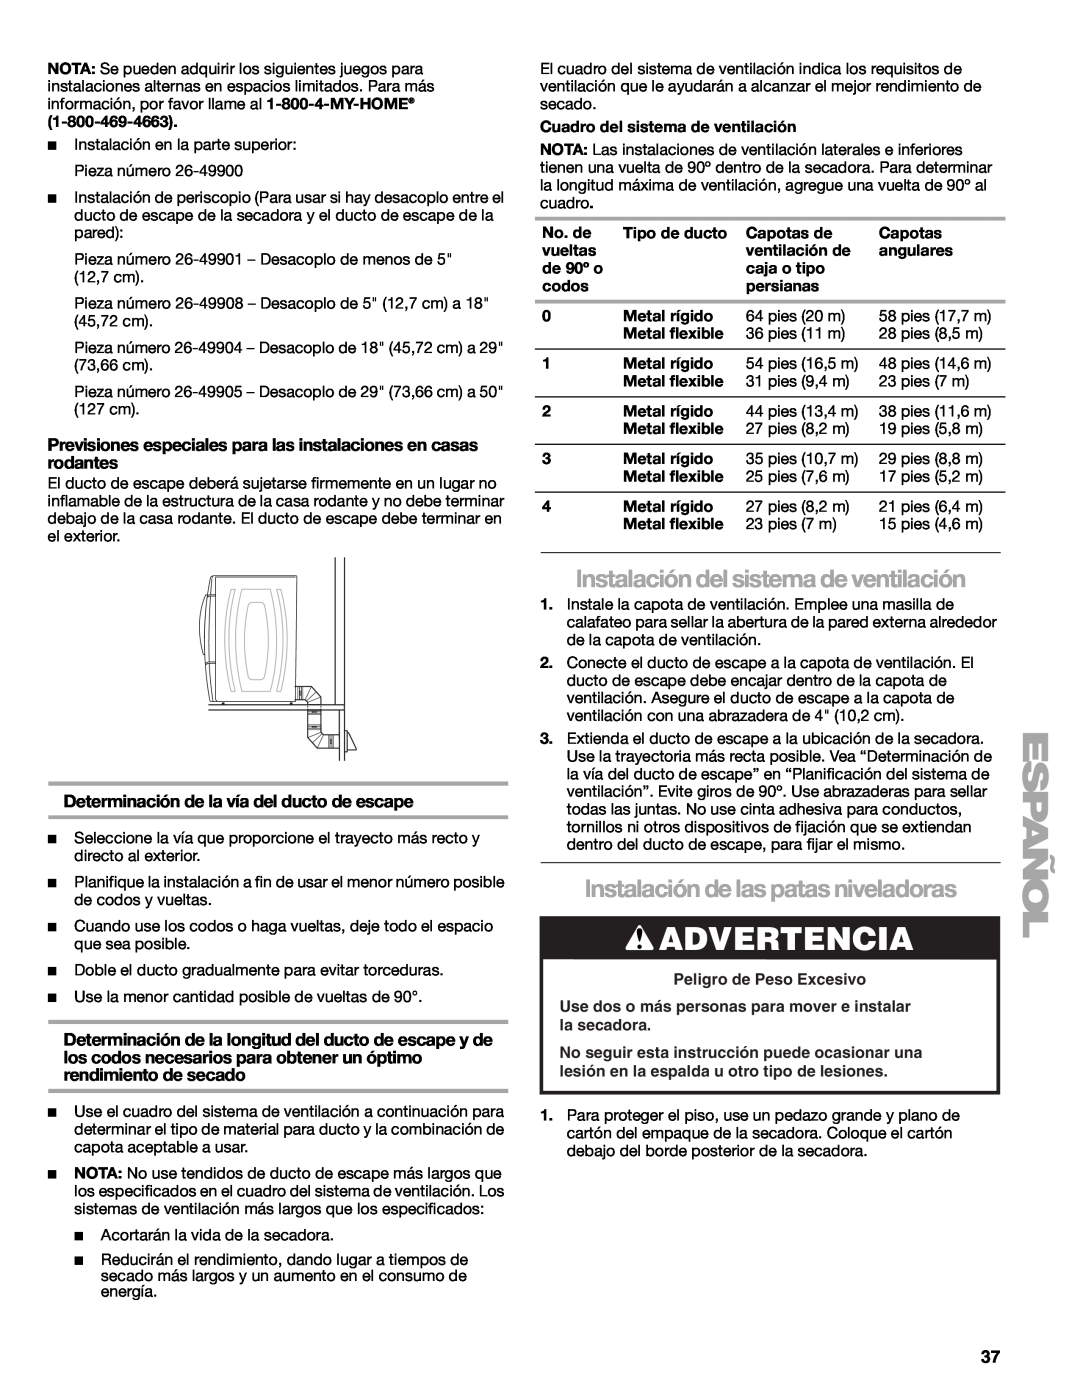 Suunto 110.9772 manual Instalación del sistema de ventilación, Instalación de las patas niveladoras, Advertencia 